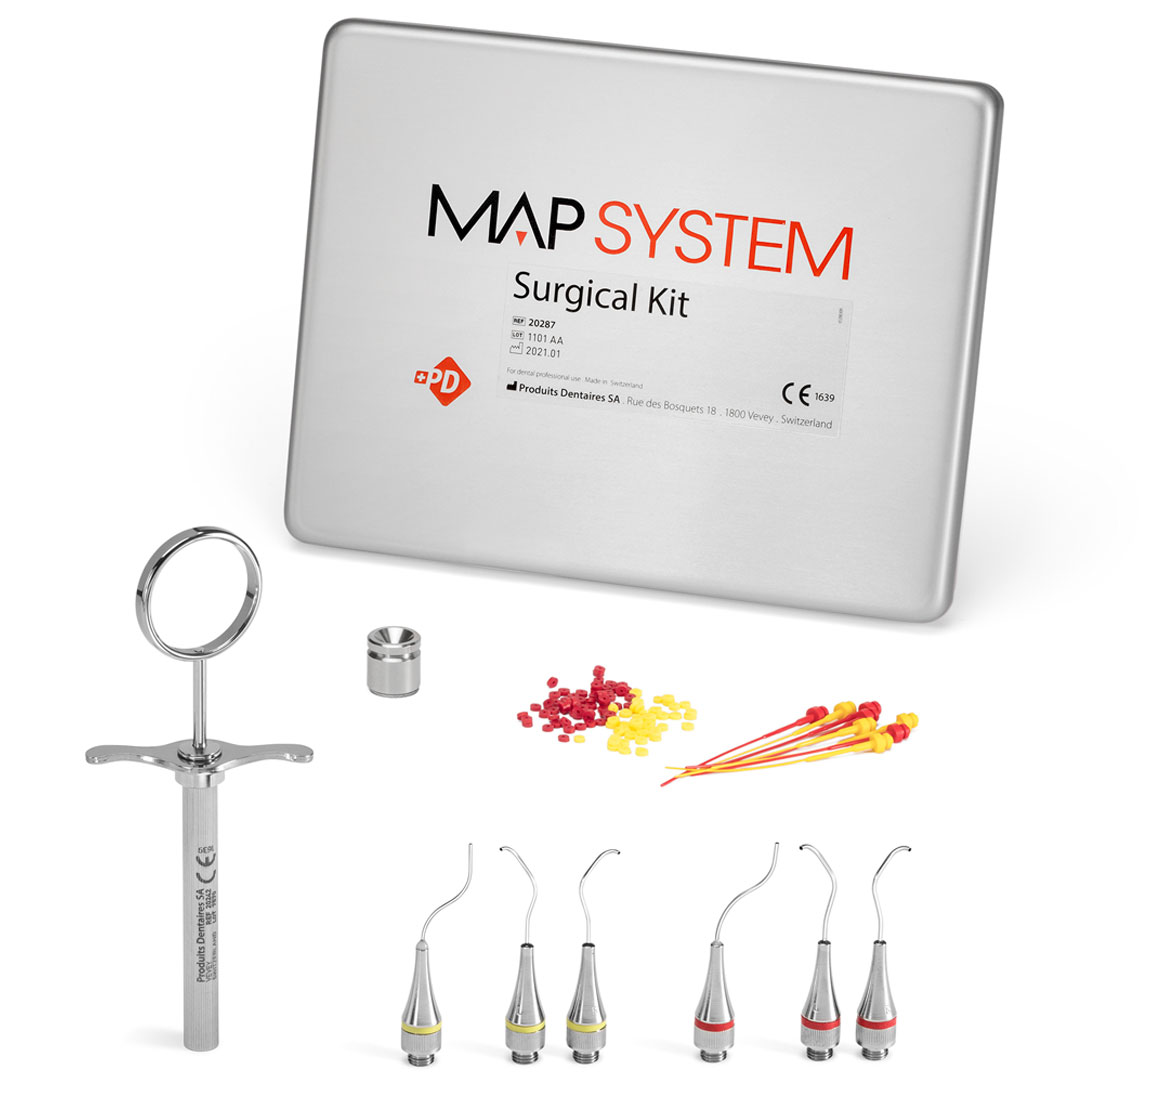 Acheter des produits MAP System Surgical Kit : têtes endodontiques pour la mise en place de ciments dans les canaux radiculaires